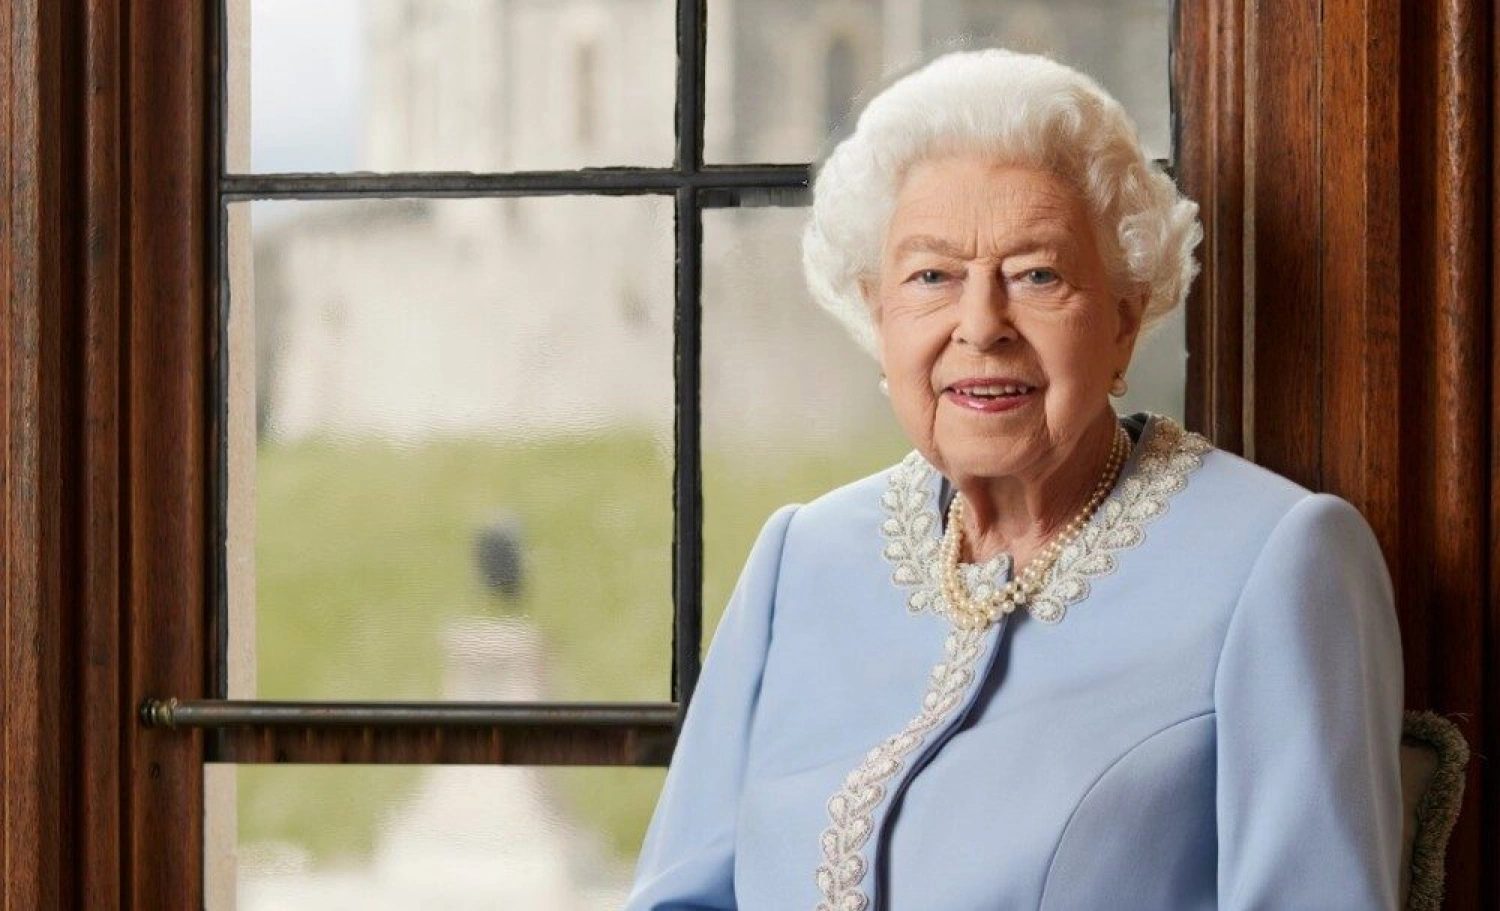 Kráľovná všetkých: Čím si Alžbeta II. získala srdcia miliónov ľudí?